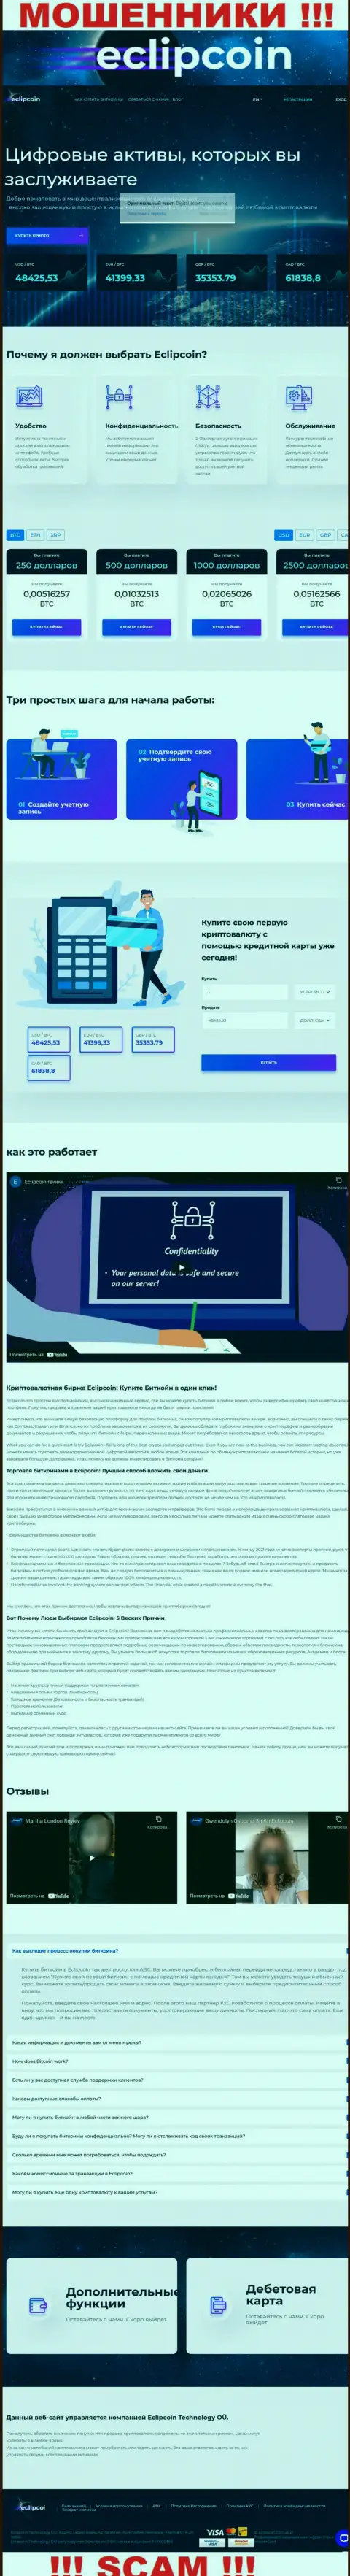 БУДЬТЕ БДИТЕЛЬНЫ !!! Официальный web-сервис EclipCoin самая что ни на есть приманка для доверчивых людей